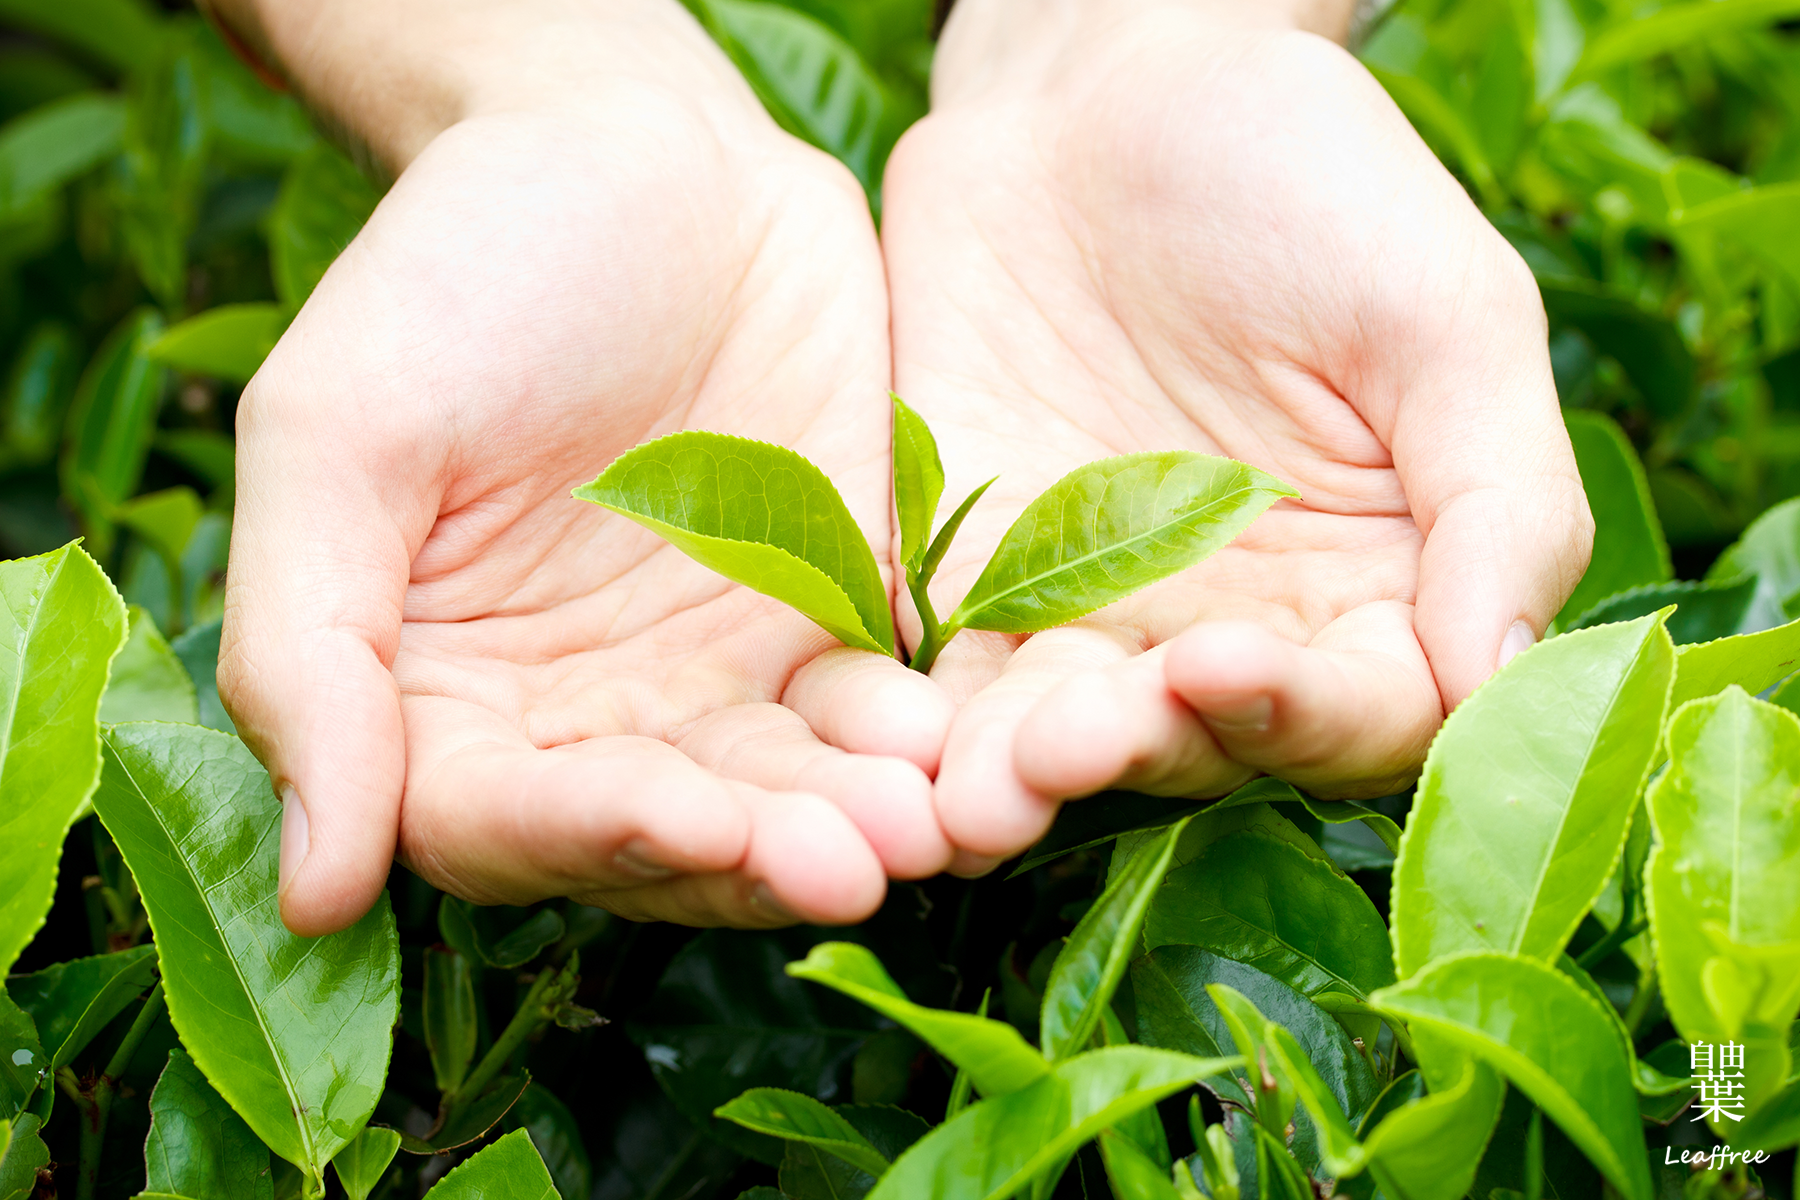 自由葉茶葉逐批「皆通過第三公證單位SGS、台灣茶業改良場農殘多重殘留分析檢測合格」，為消費者安全把關。深入產地了解茶農種茶／製茶理念後契作；代工廠均經ISO22000認證。